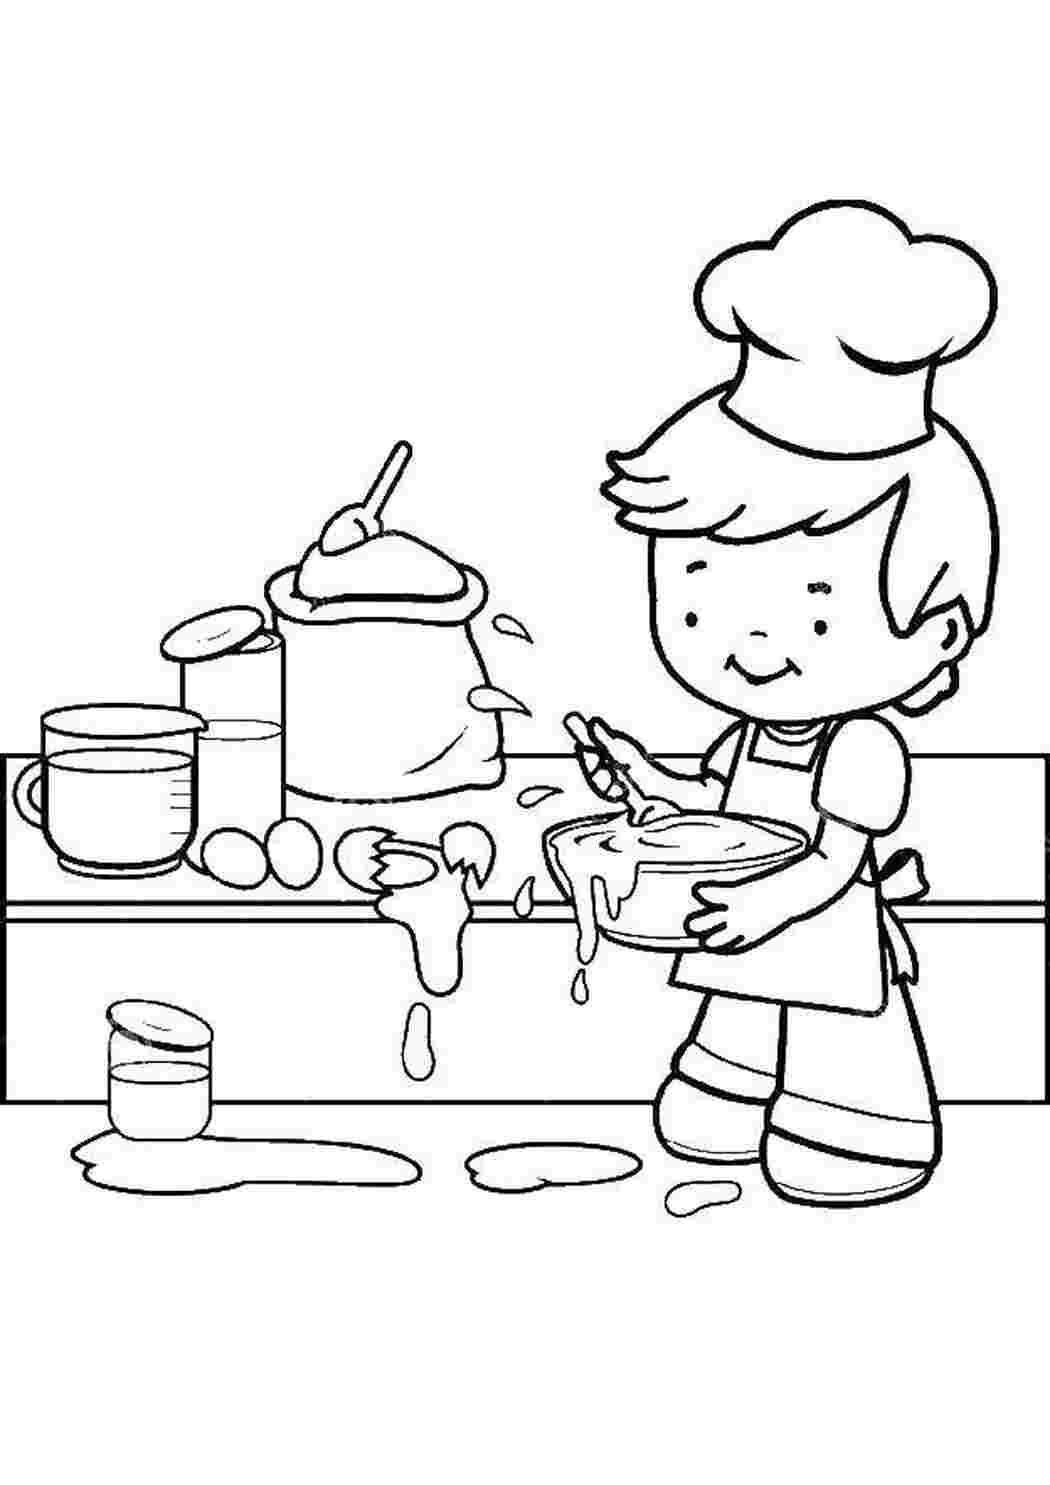 Раскраска помощники на кухне для детей